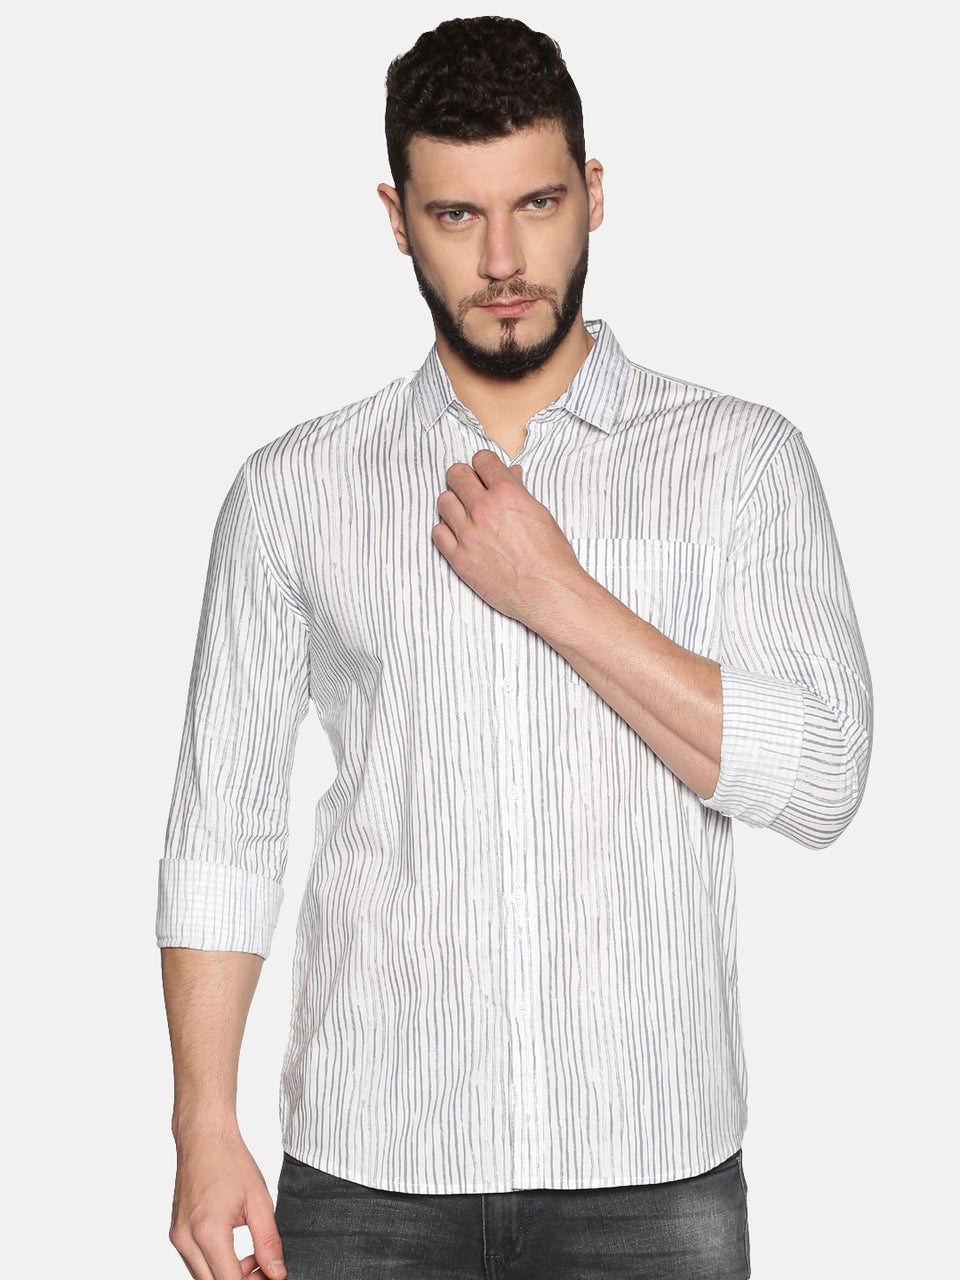 White Striped Shirts - Buy White Striped Shirts online in India